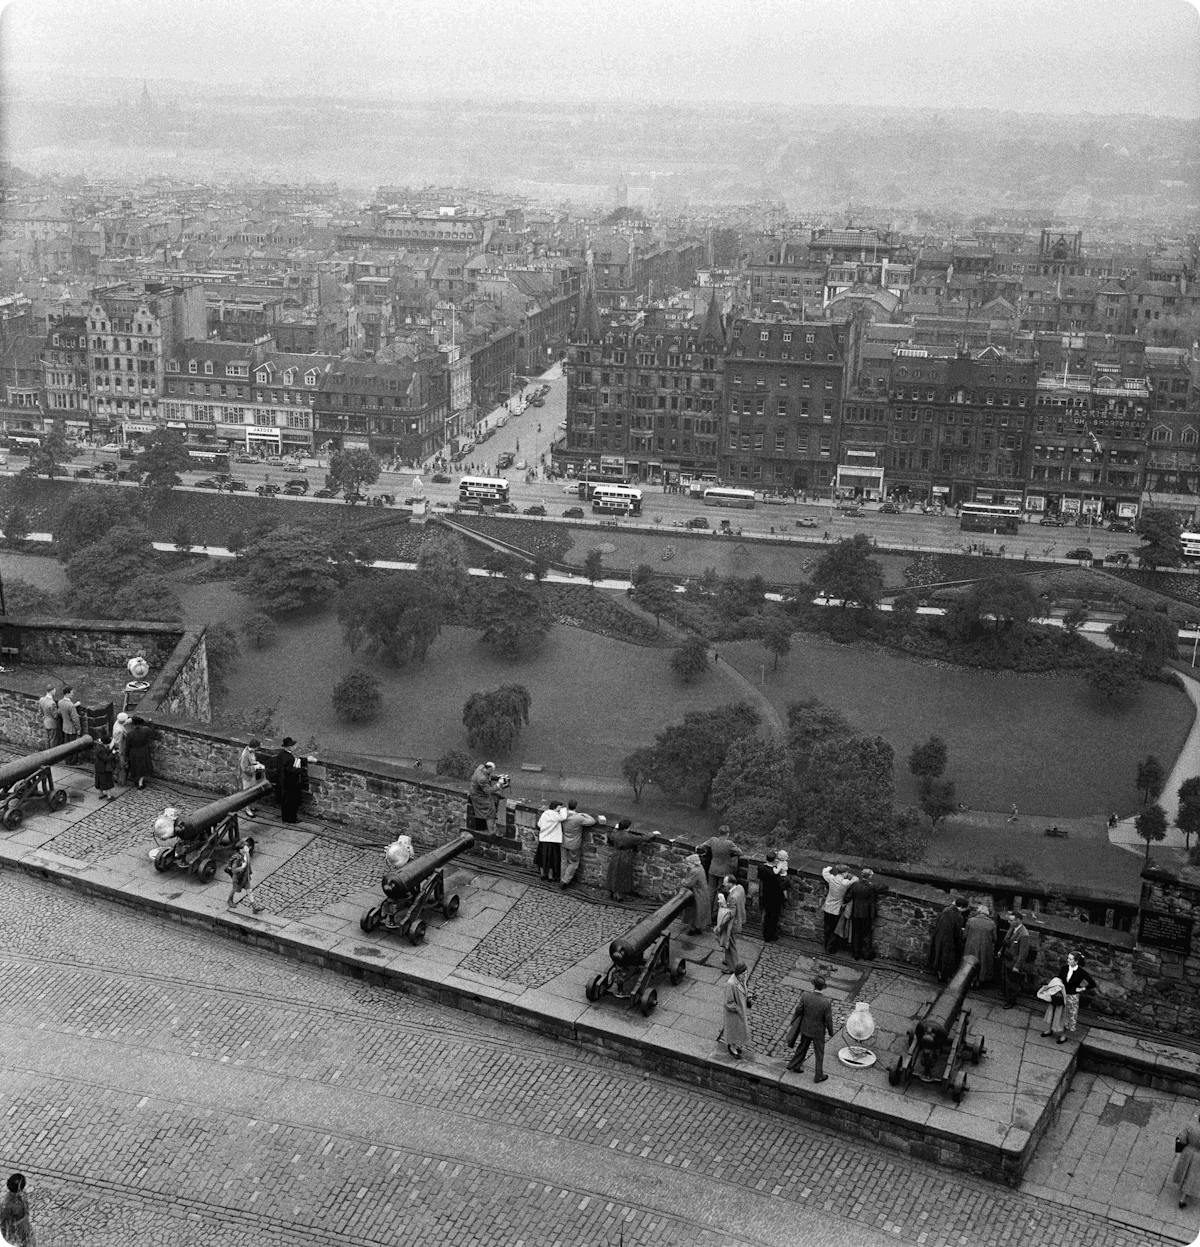 Edinburgh in 1954